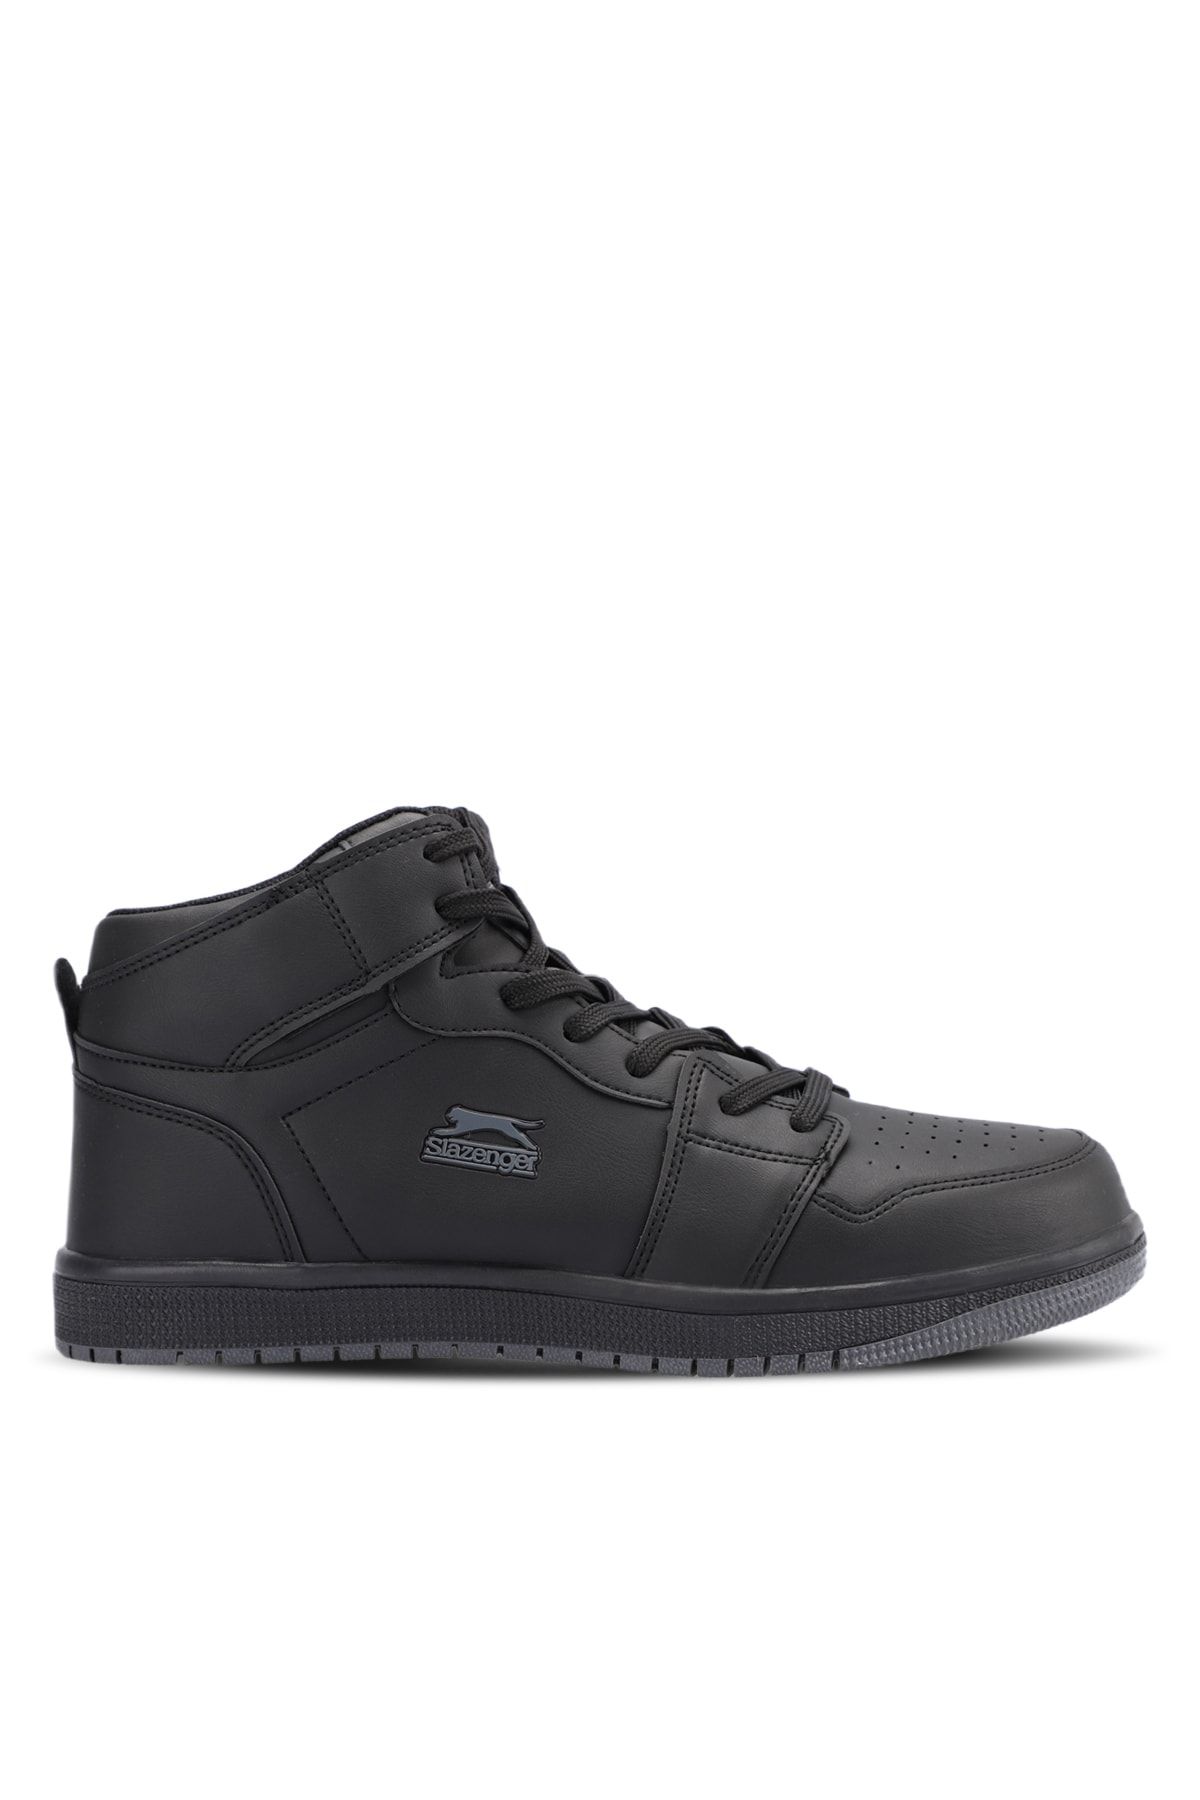 Slazenger Labor Hıgh Sneaker Erkek Ayakkabı Siyah / Siyah